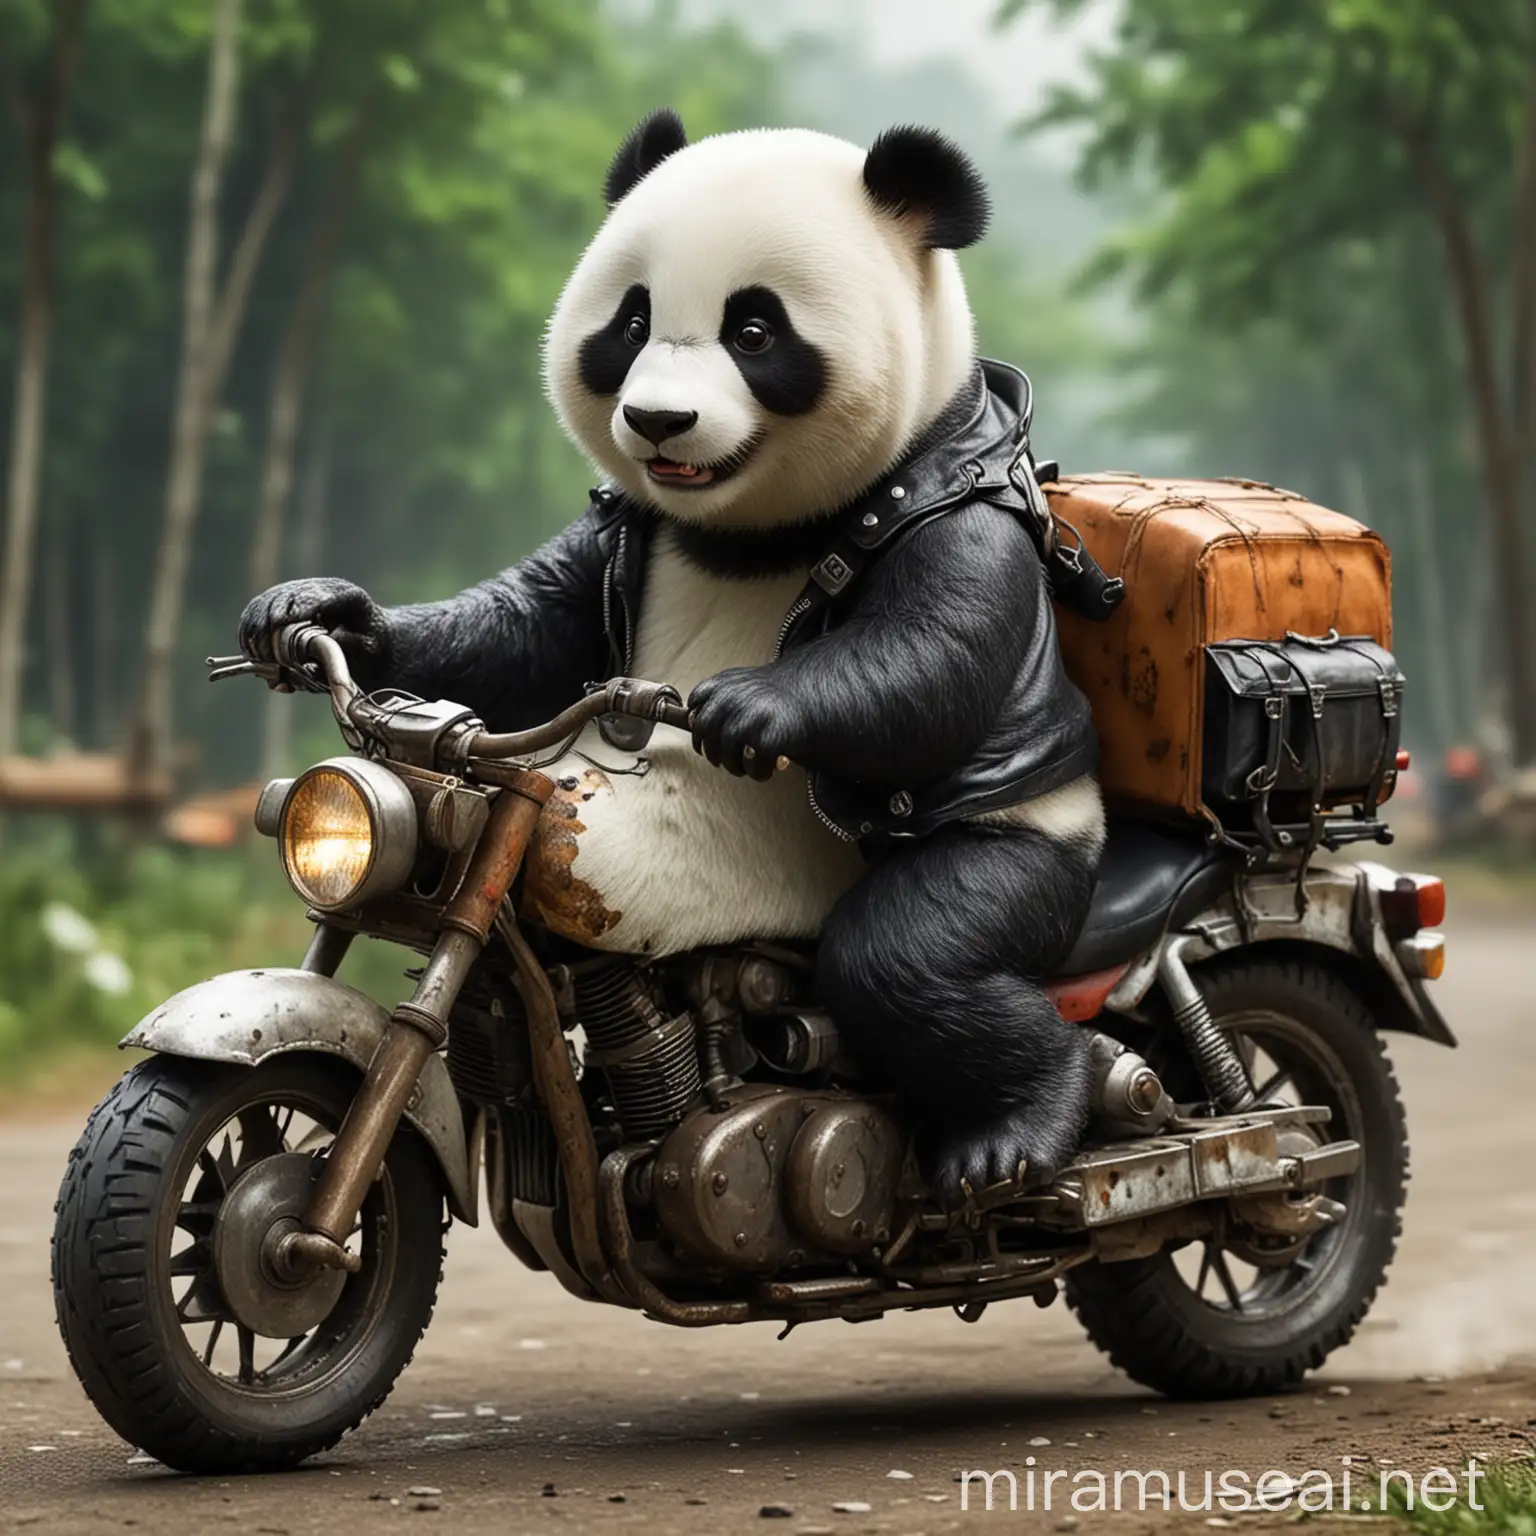 熊猫人在骑摩托车